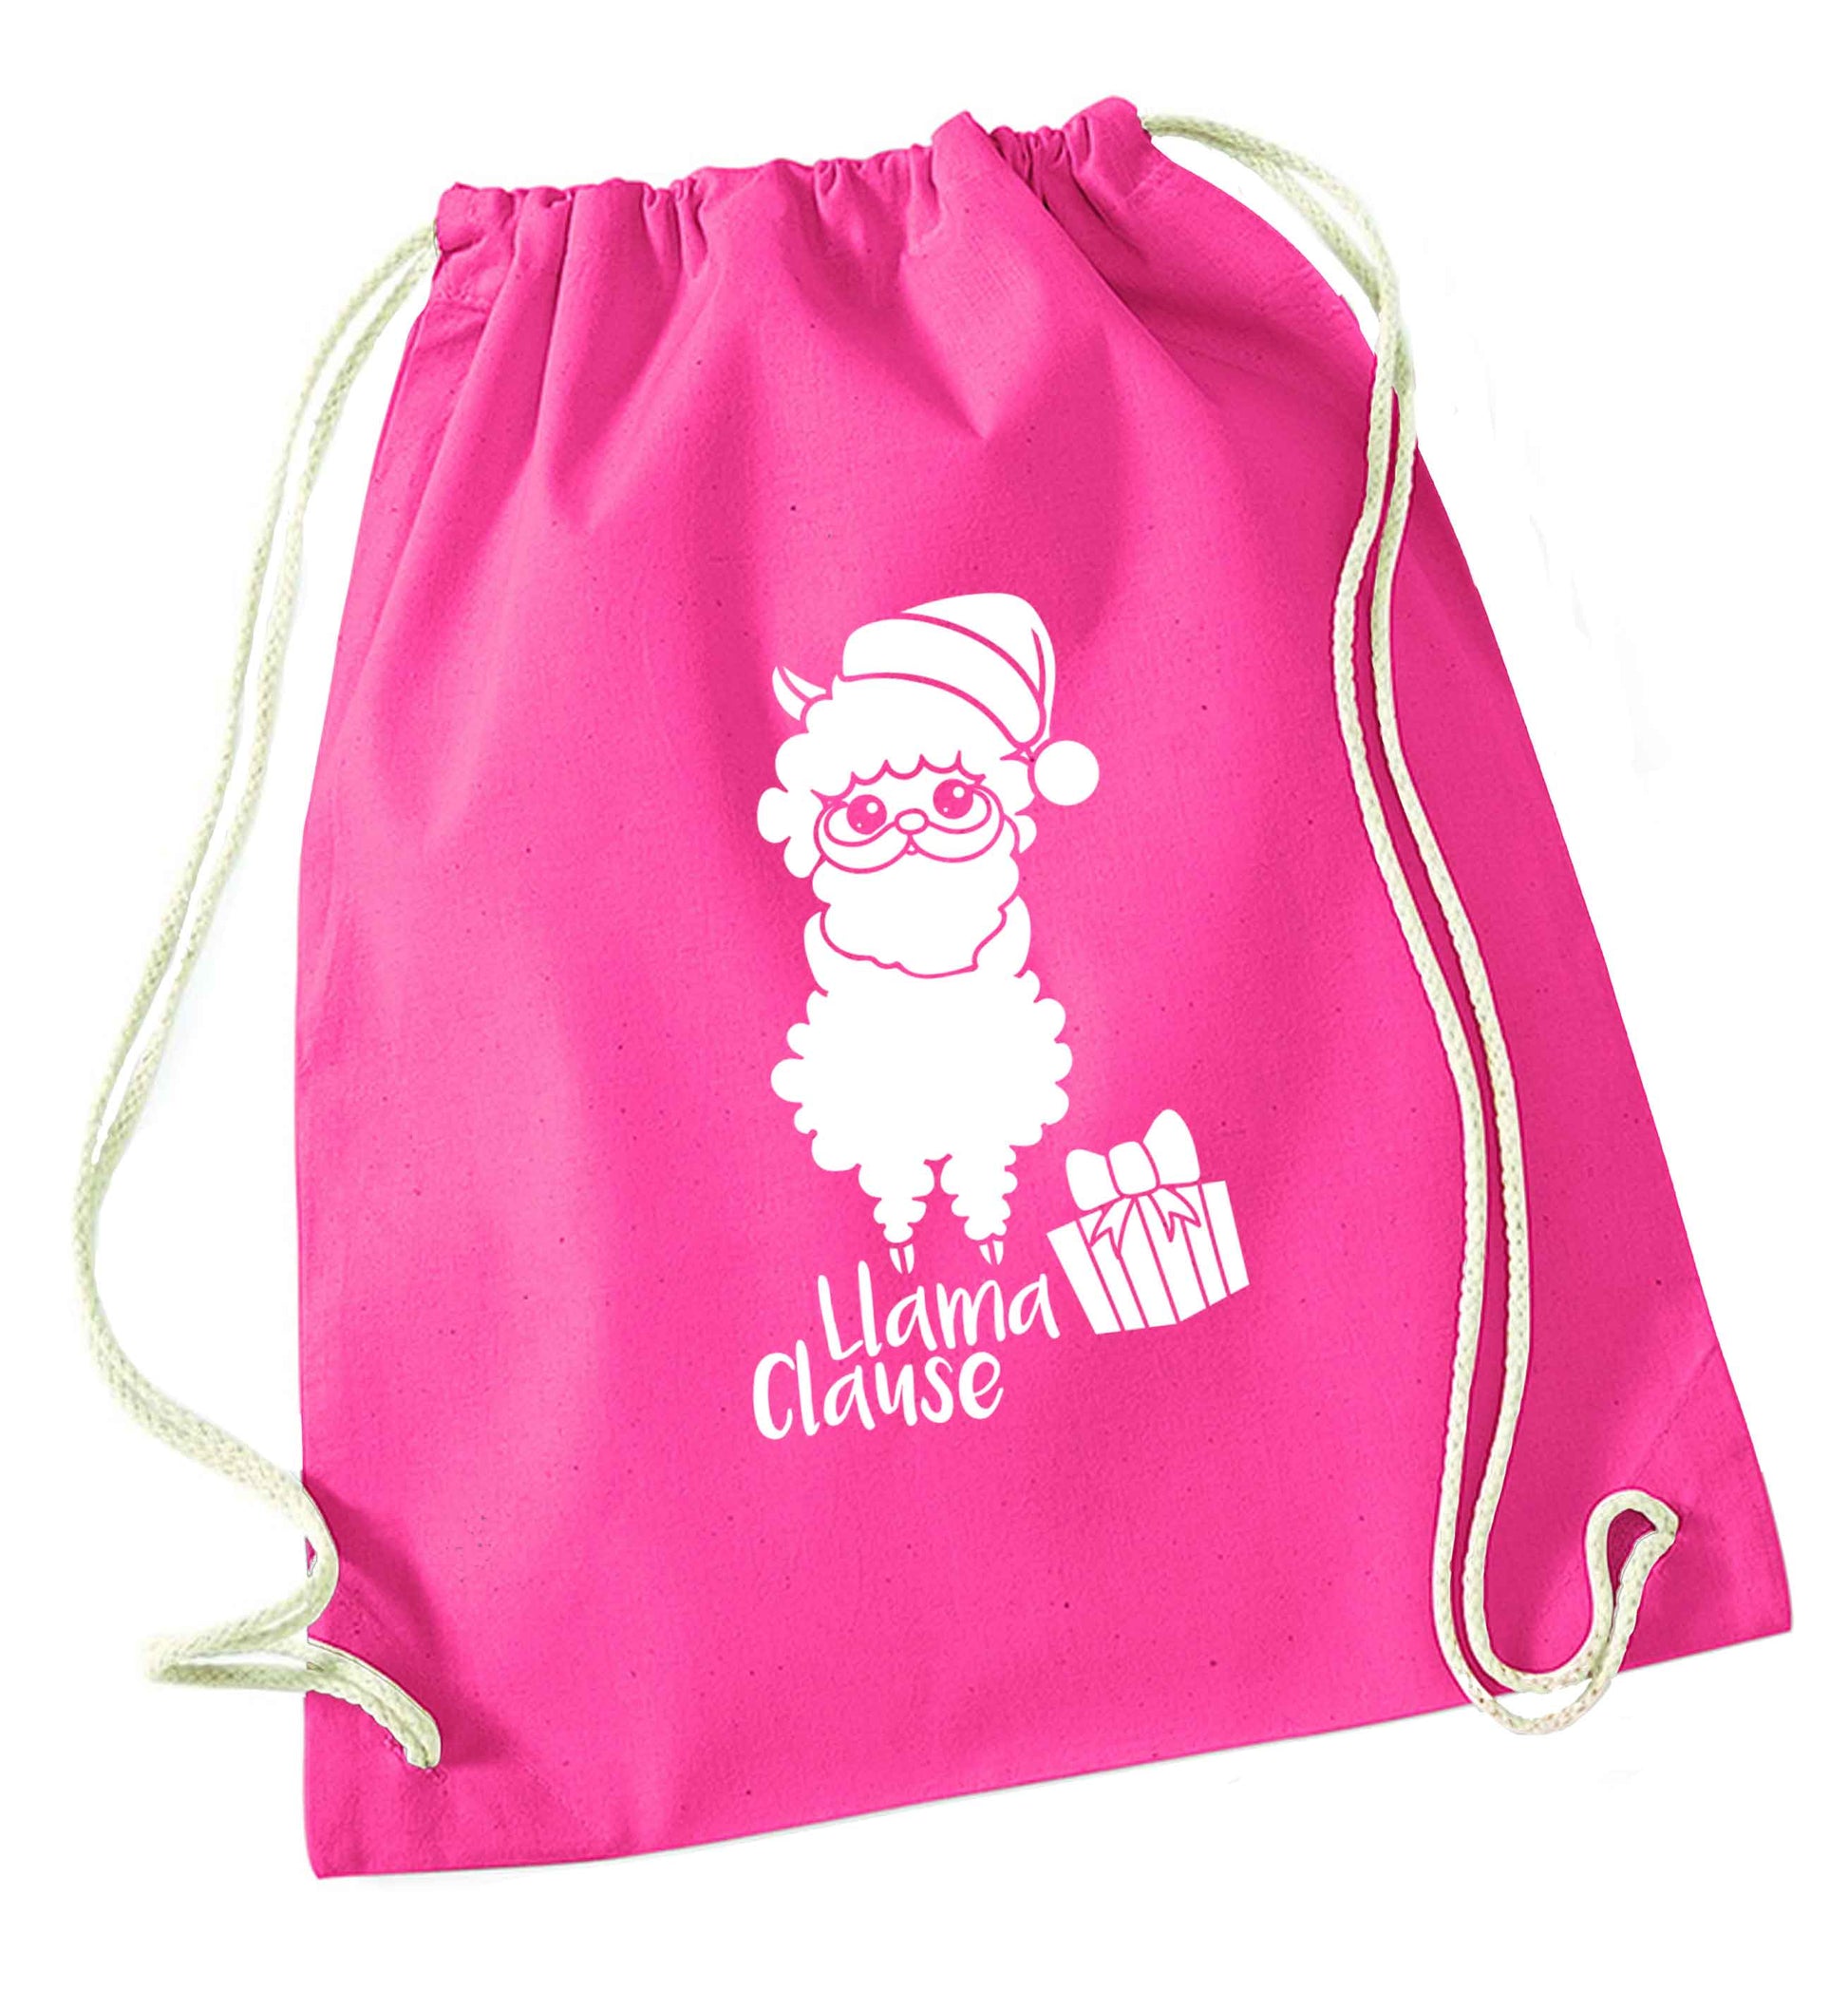 Llama Clause pink drawstring bag